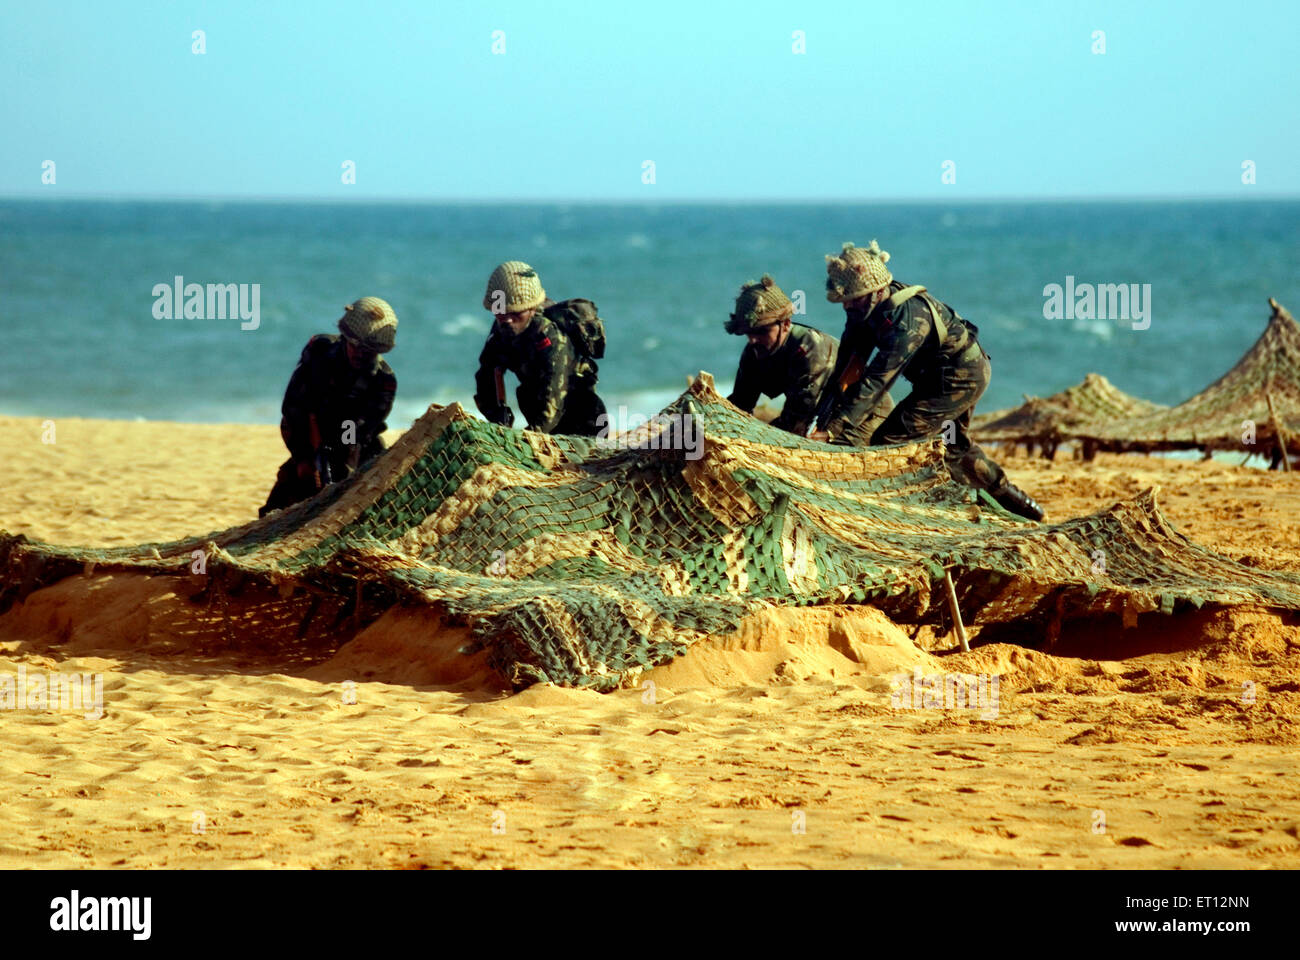 Ejército indio capturando la manifestación de búnker enemigo el día del Ejército ; Playa Shankumugham ; Trivandrum ; Thiruvananthapuram ; Kerala ; India Foto de stock